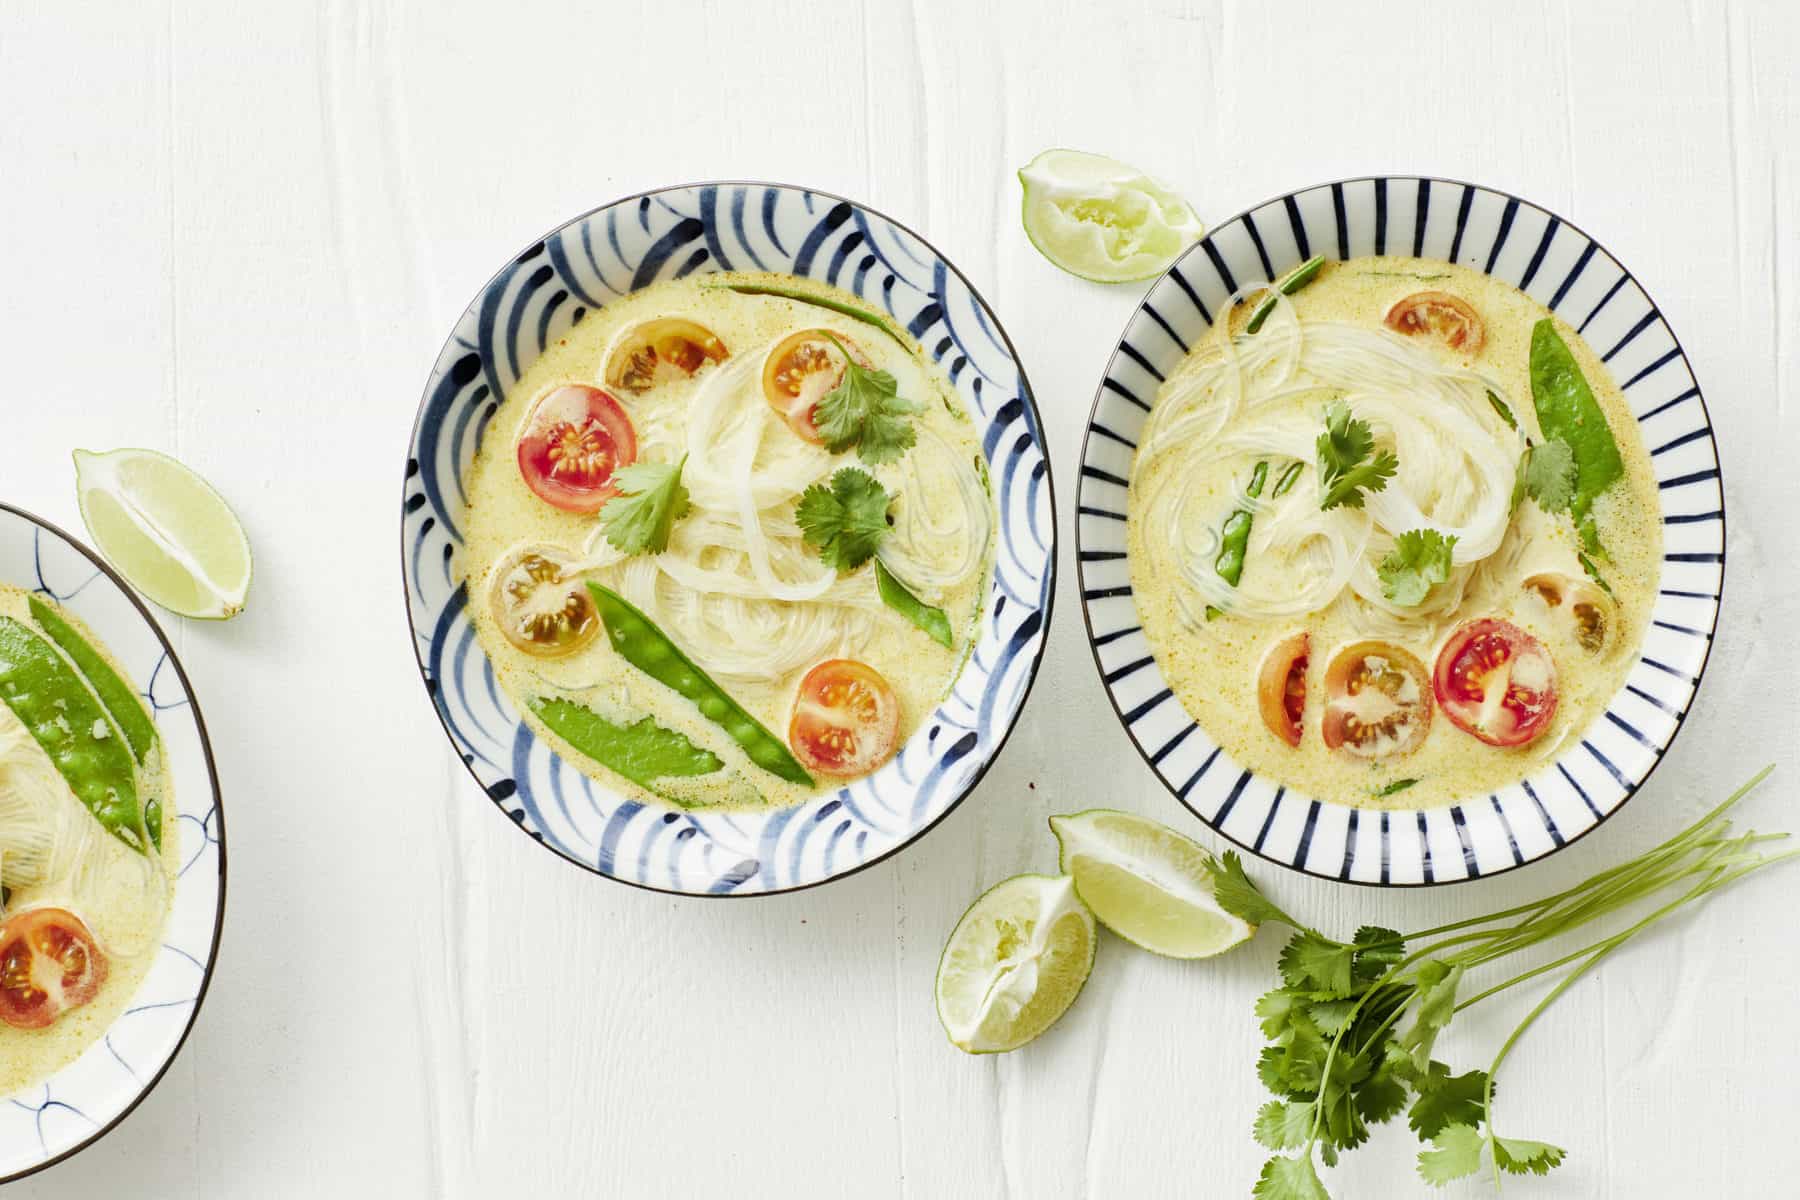 Thai-Curry-Suppe mit Glasnudeln aus dem Thermomix® - Foto: Jorma Gottwald